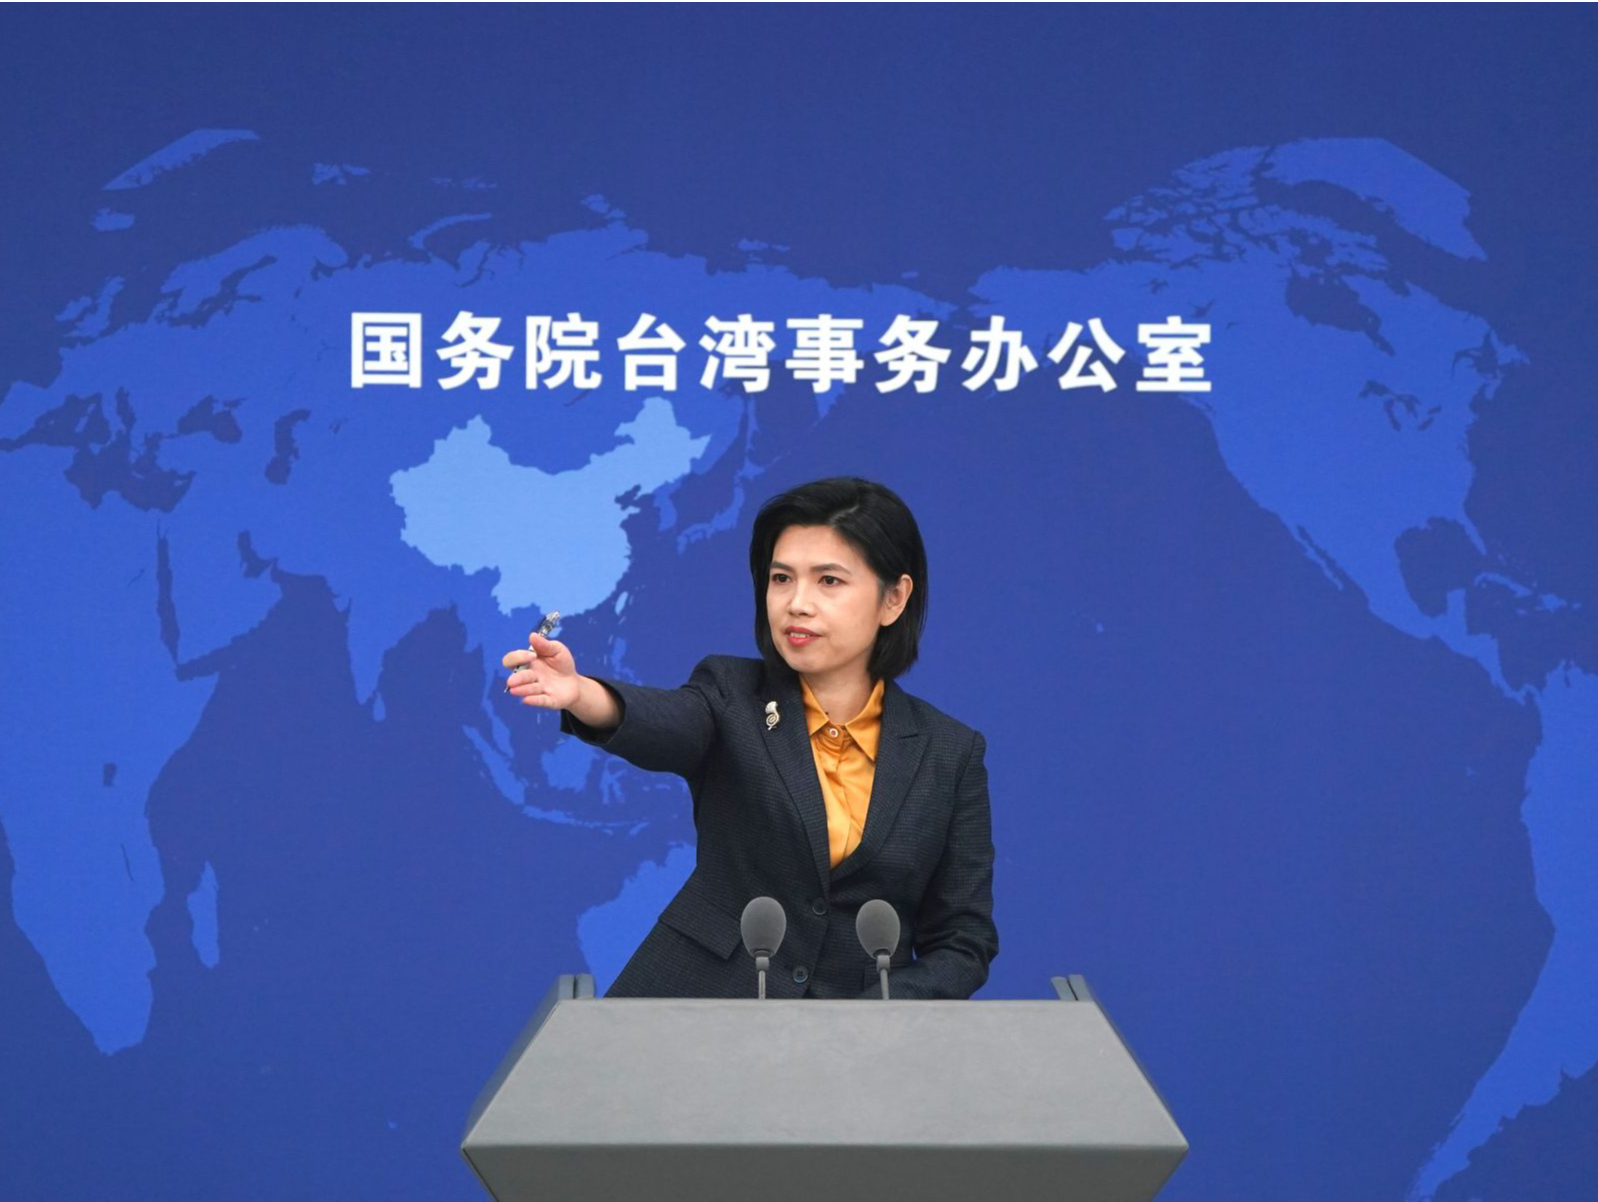 国台办：日本在台湾问题上对中国人民负有历史罪责，更应谨言慎行